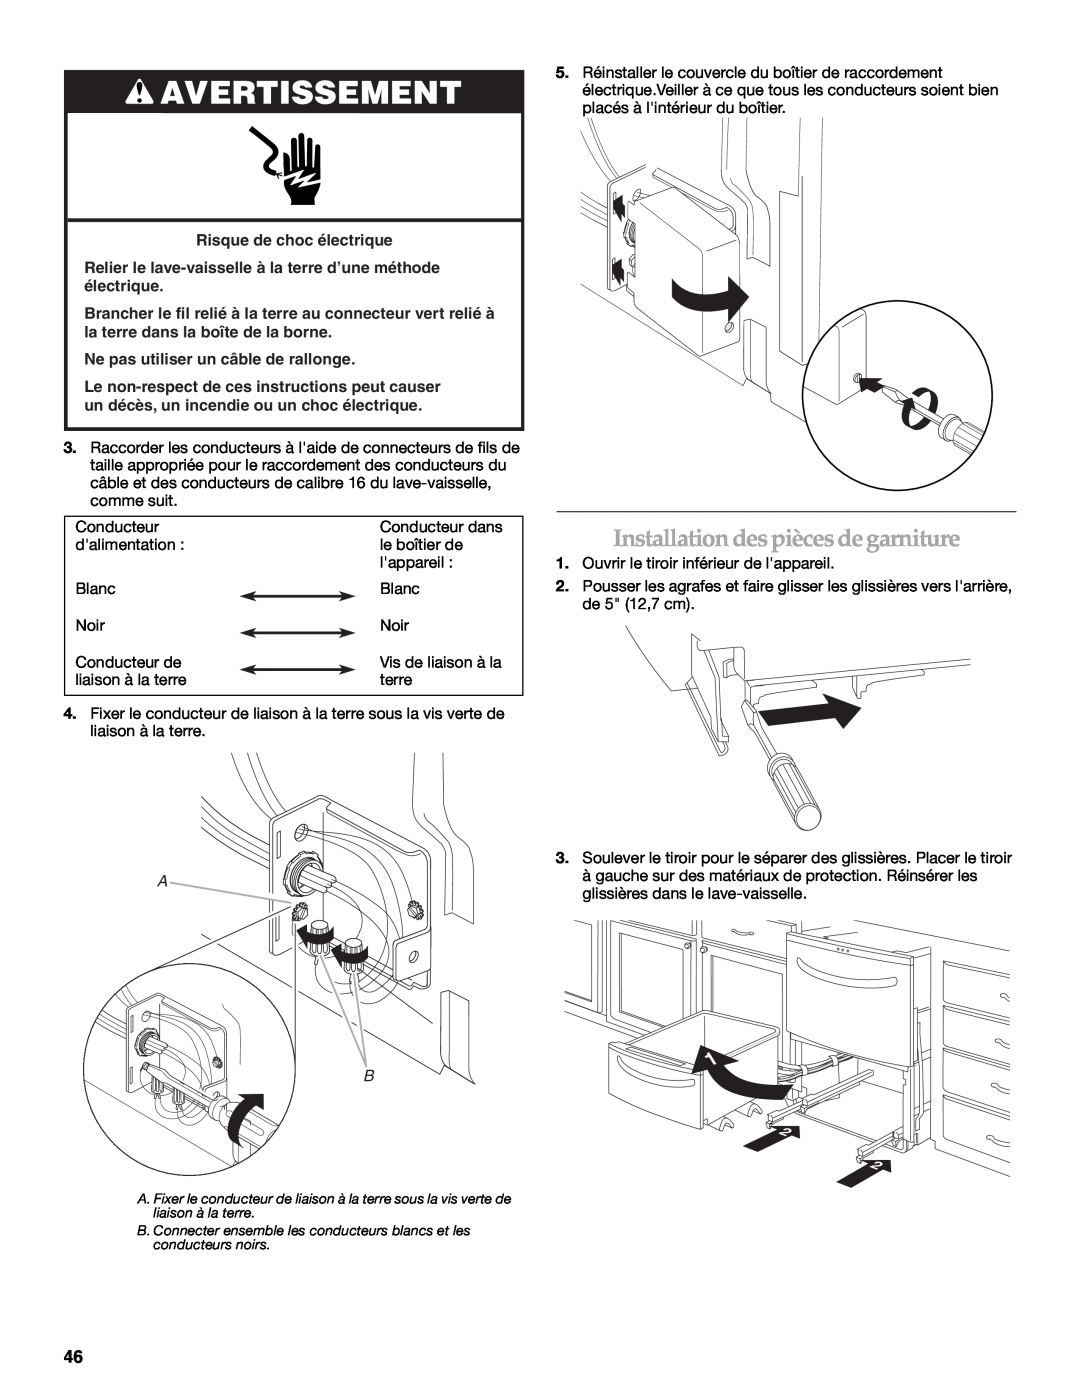 KitchenAid W10118037B installation instructions Installation des pièces de garniture, Avertissement 